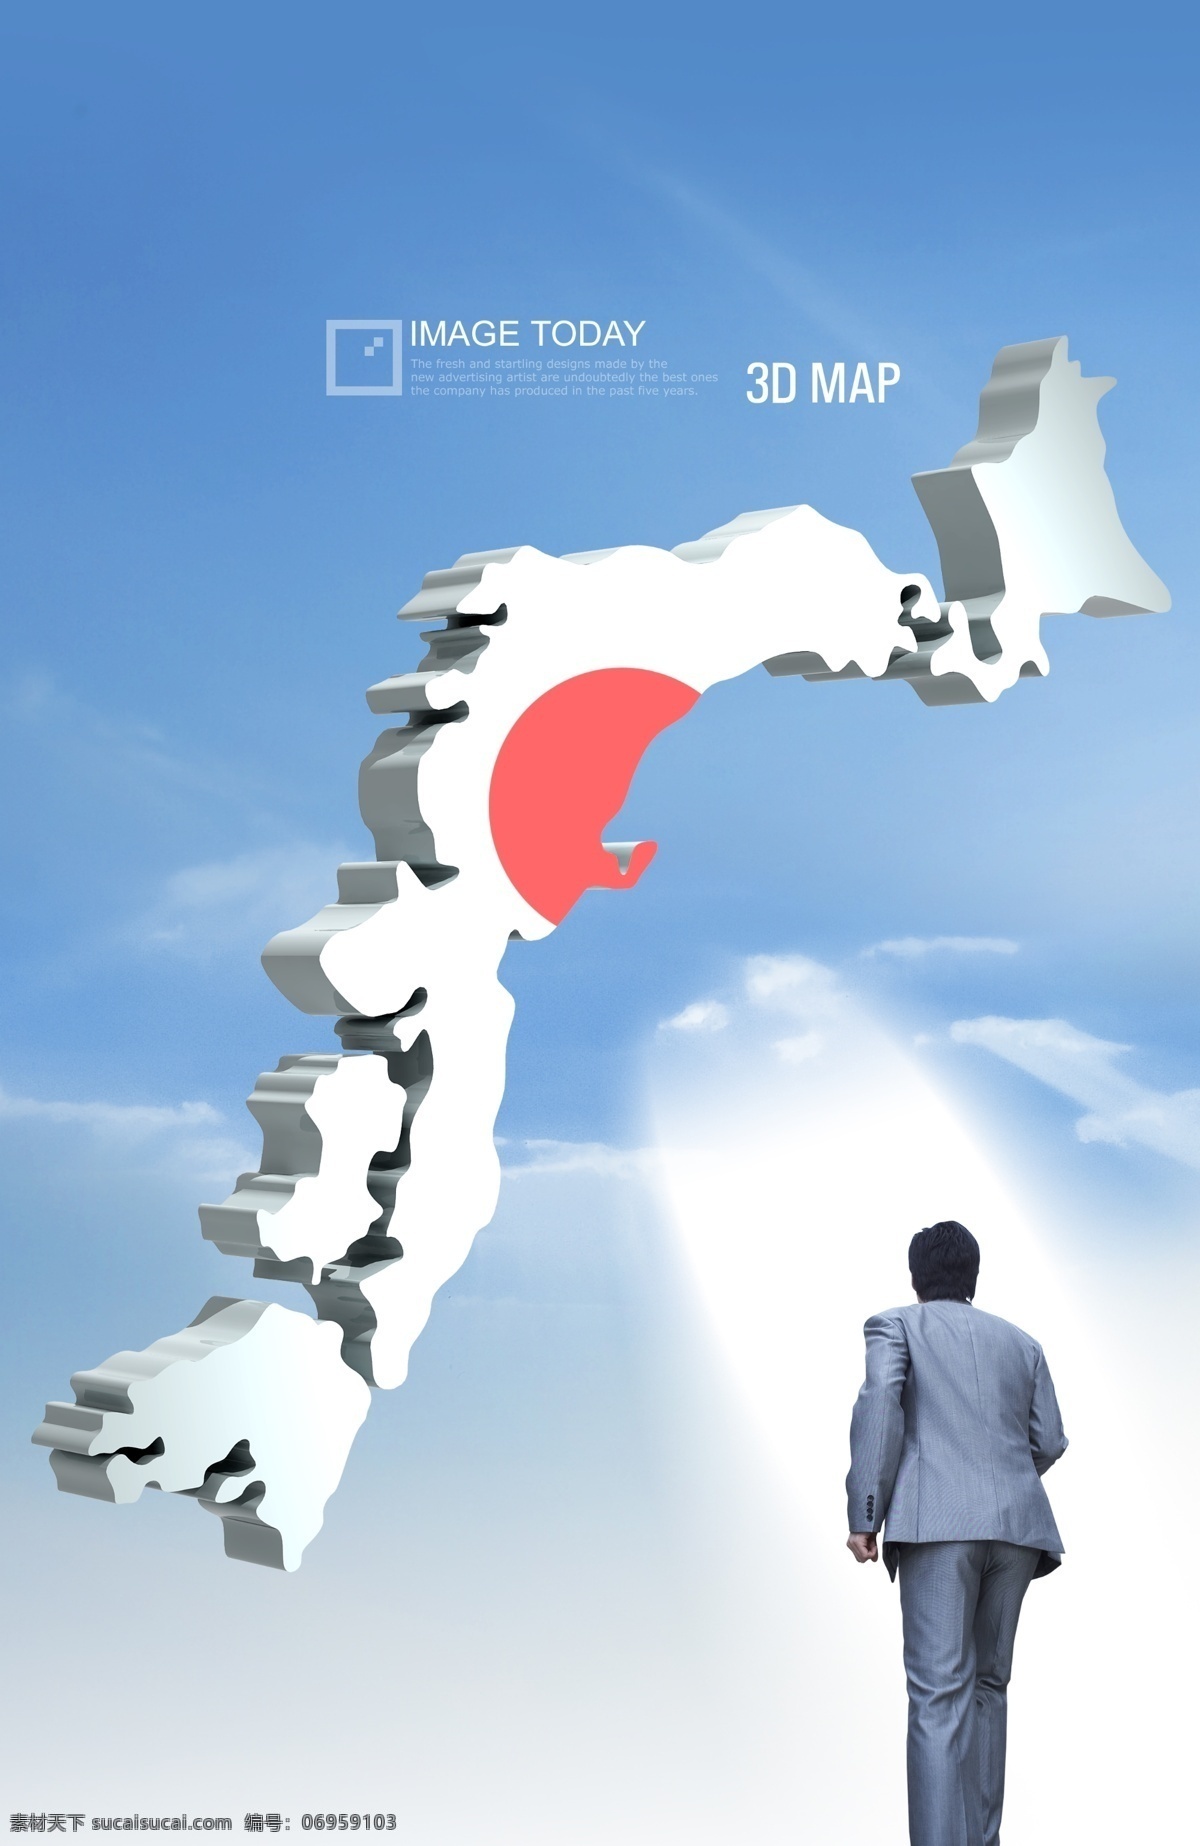 国际贸易 白领 成功人士 3d 科技蓝 3d日本地图 阳光 光束 商务金融 科技金融 psd素材 白色